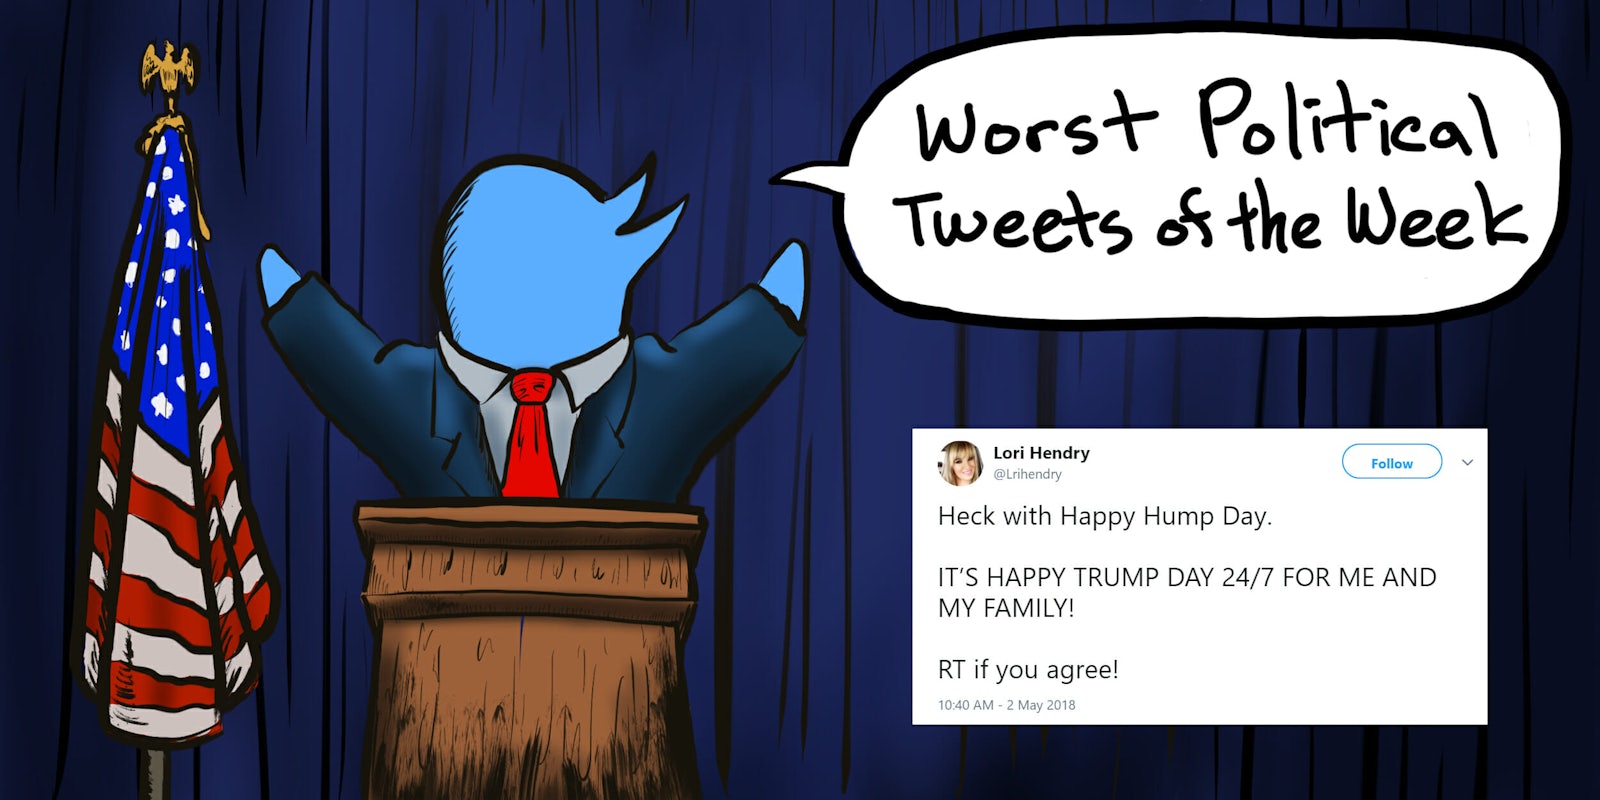 Lori Hendry Worst Political Tweets of the Week